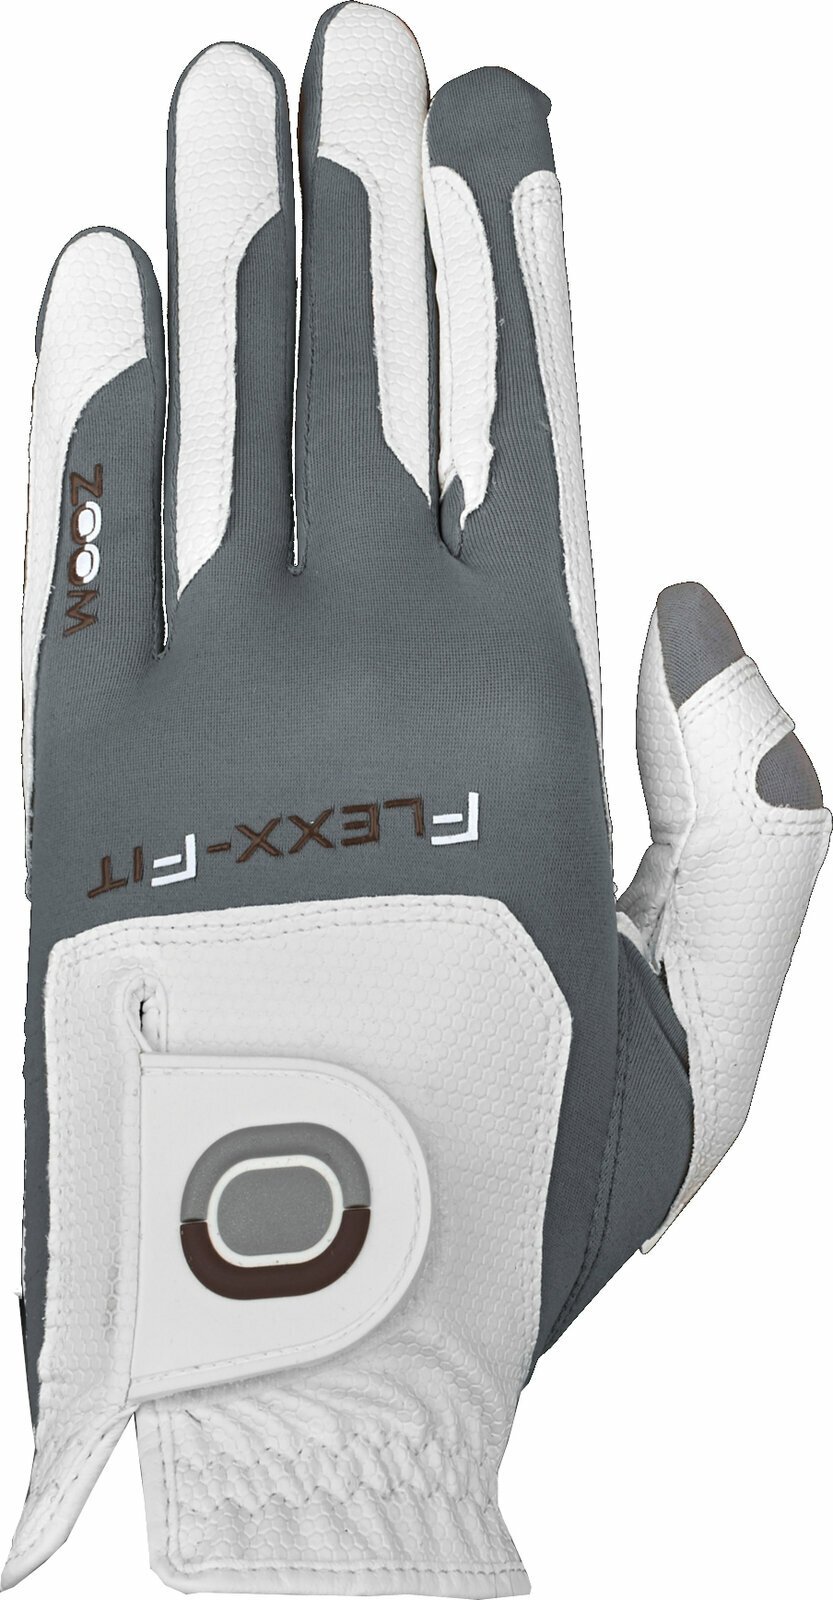 Handsker Zoom Gloves Weather Mens Golf Glove Handsker